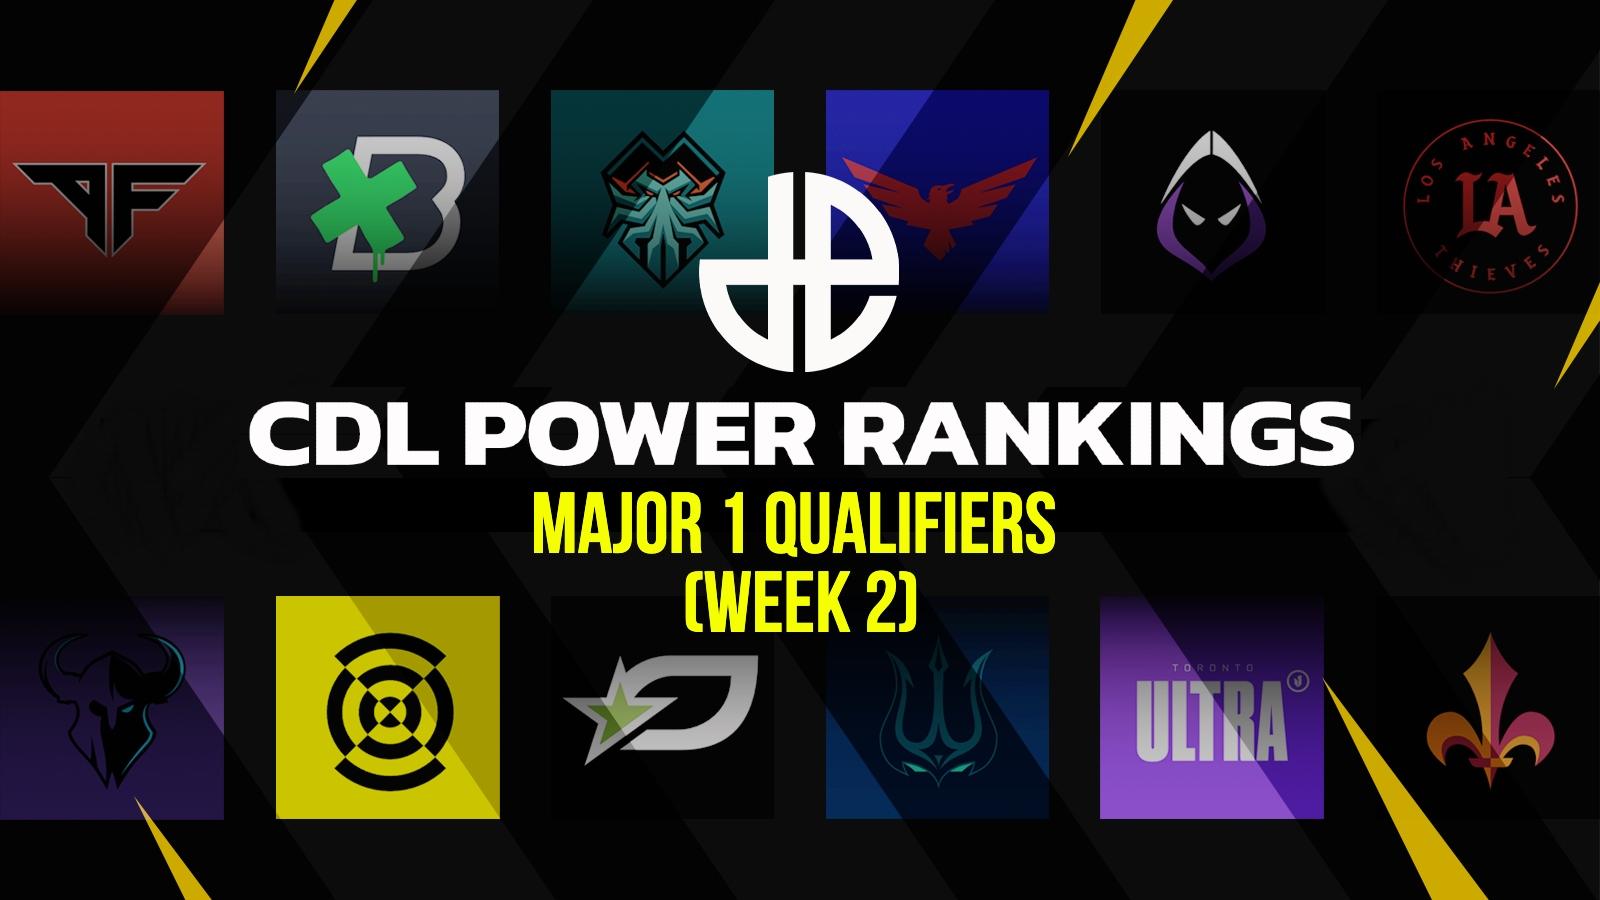 cdl power rankings major 1 qualifiers week 2